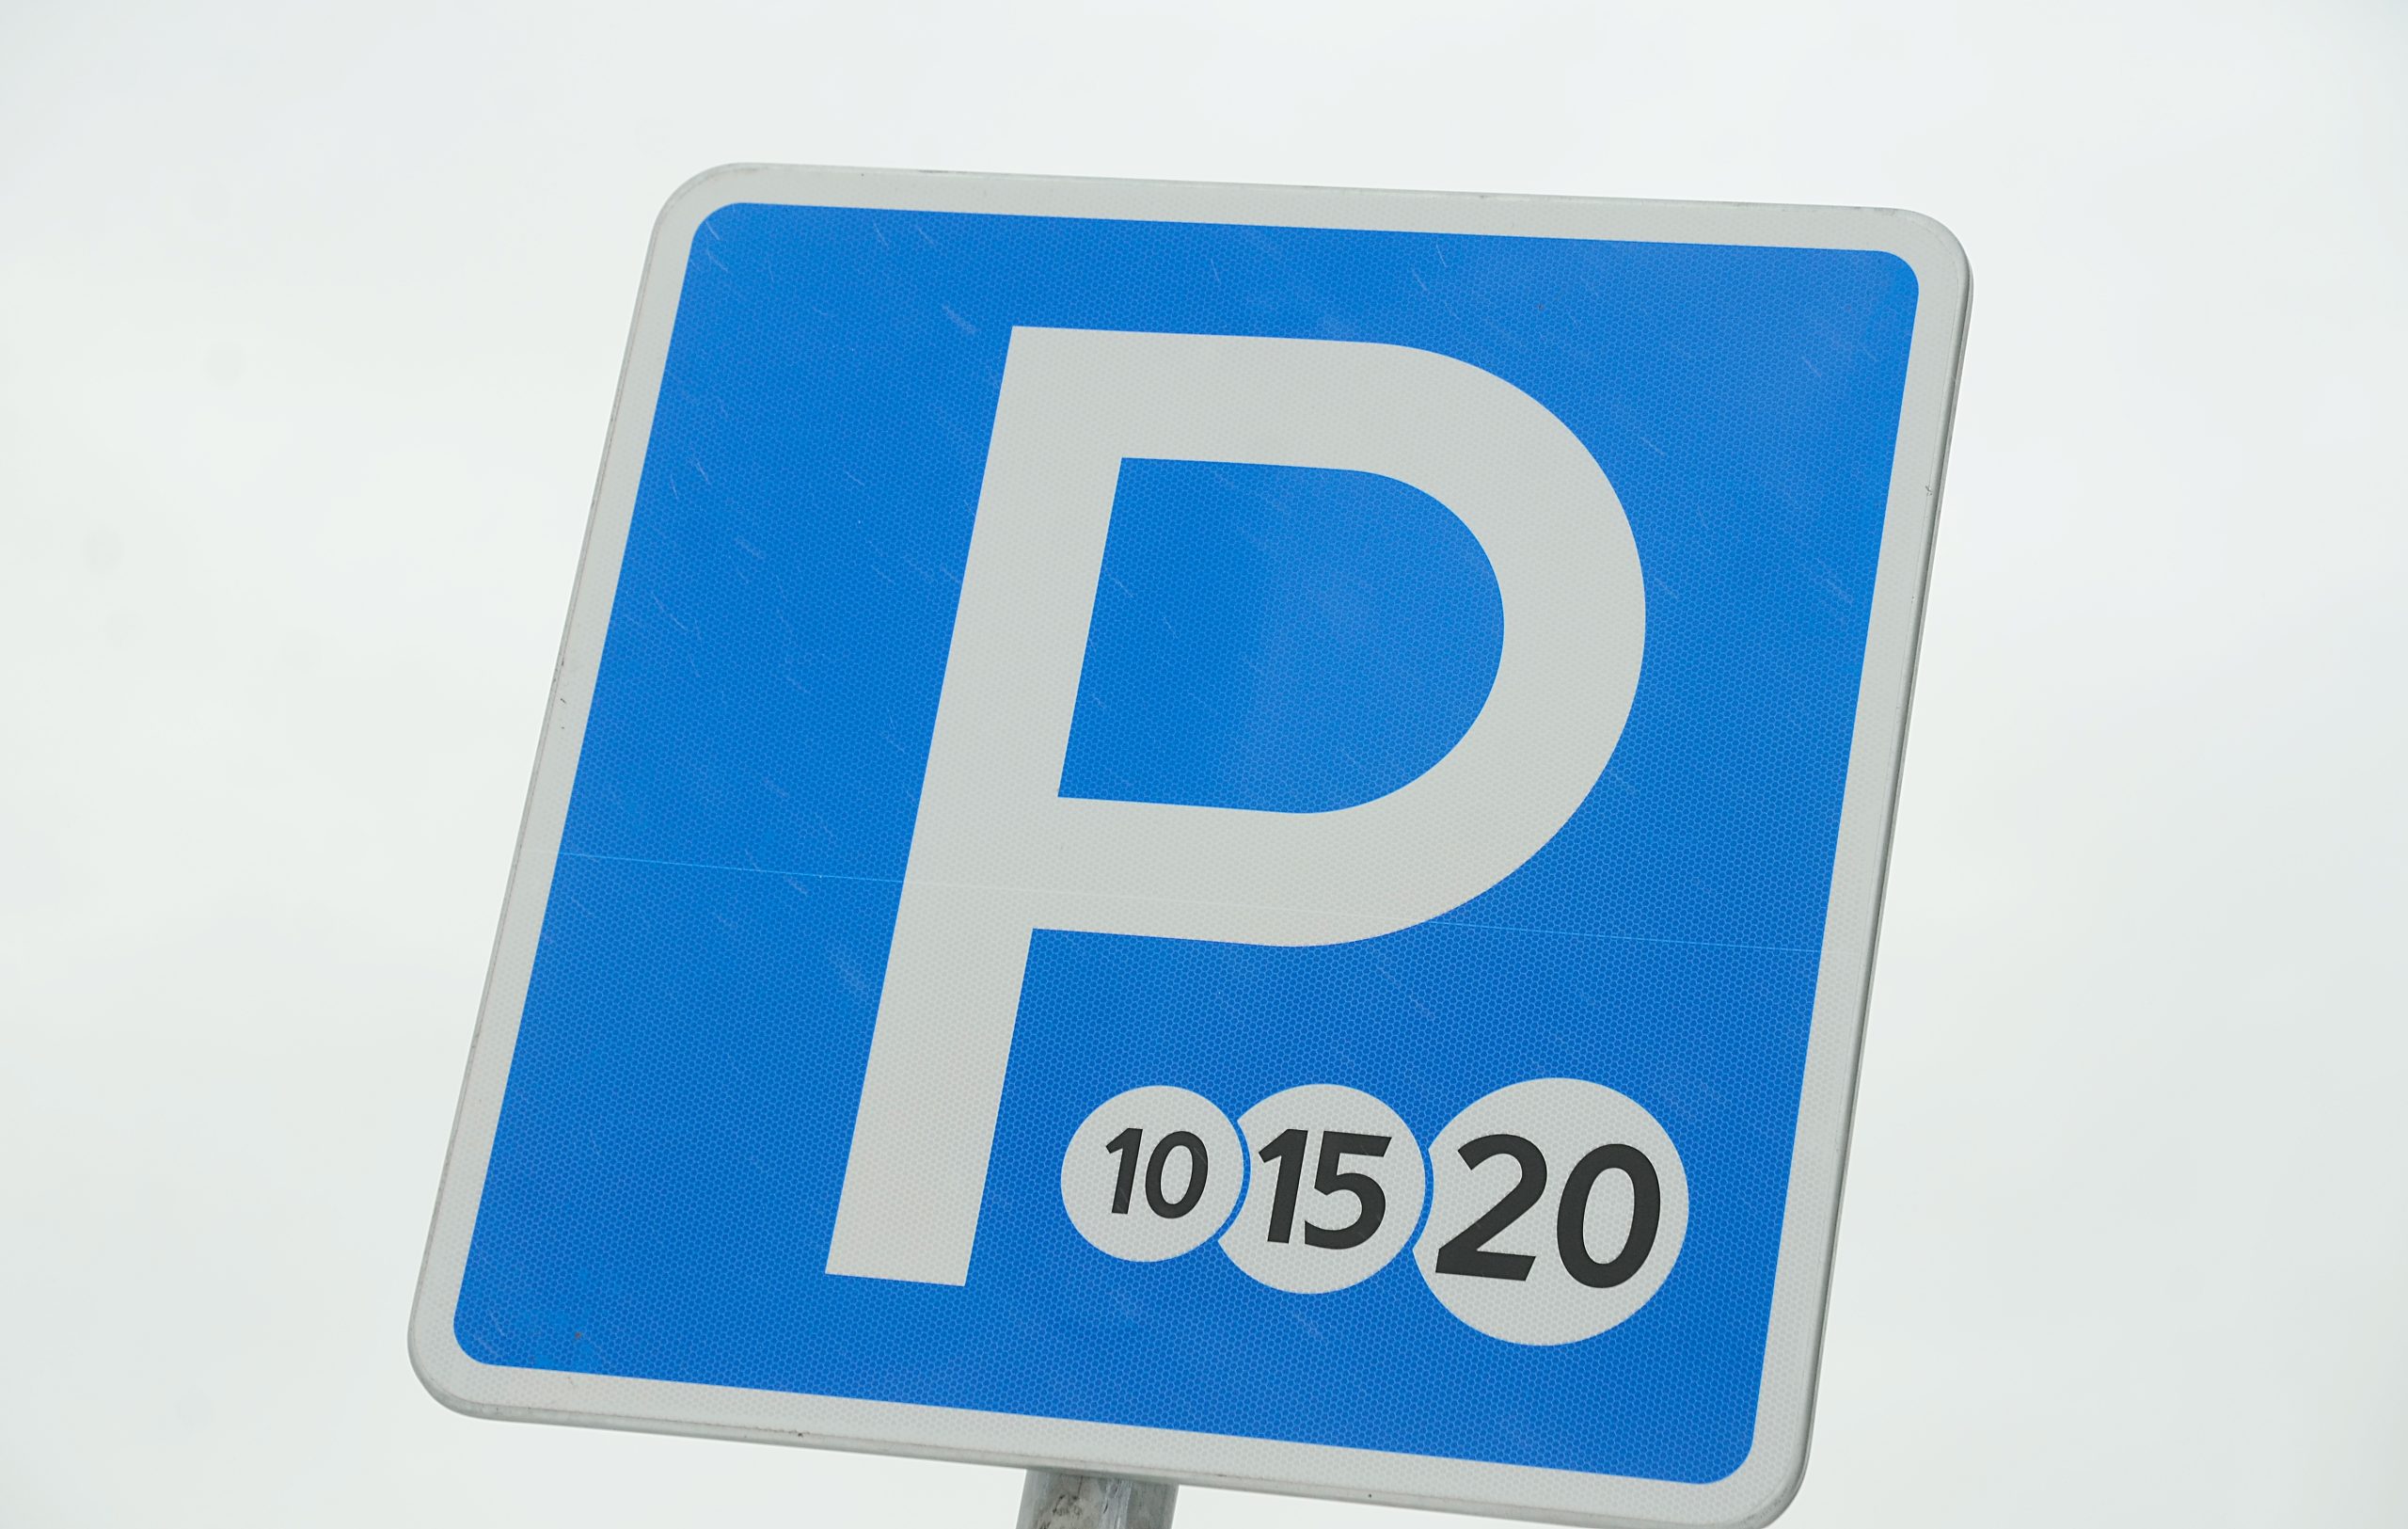 Бесплатная парковка будет возможна с 8 по 9 марта